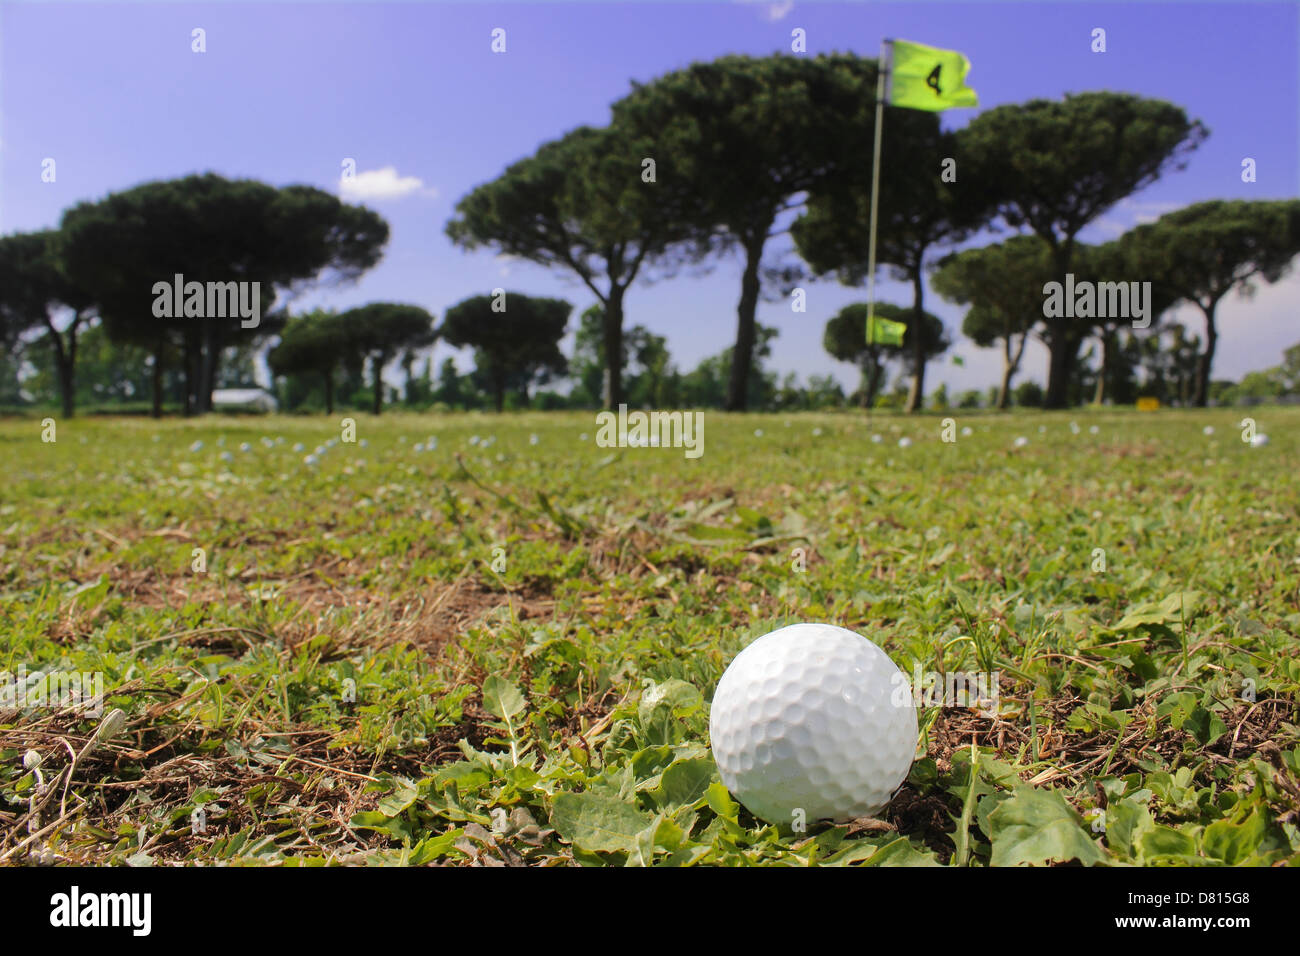 Club de Golf de Roma, bola, club y paisaje Foto de stock